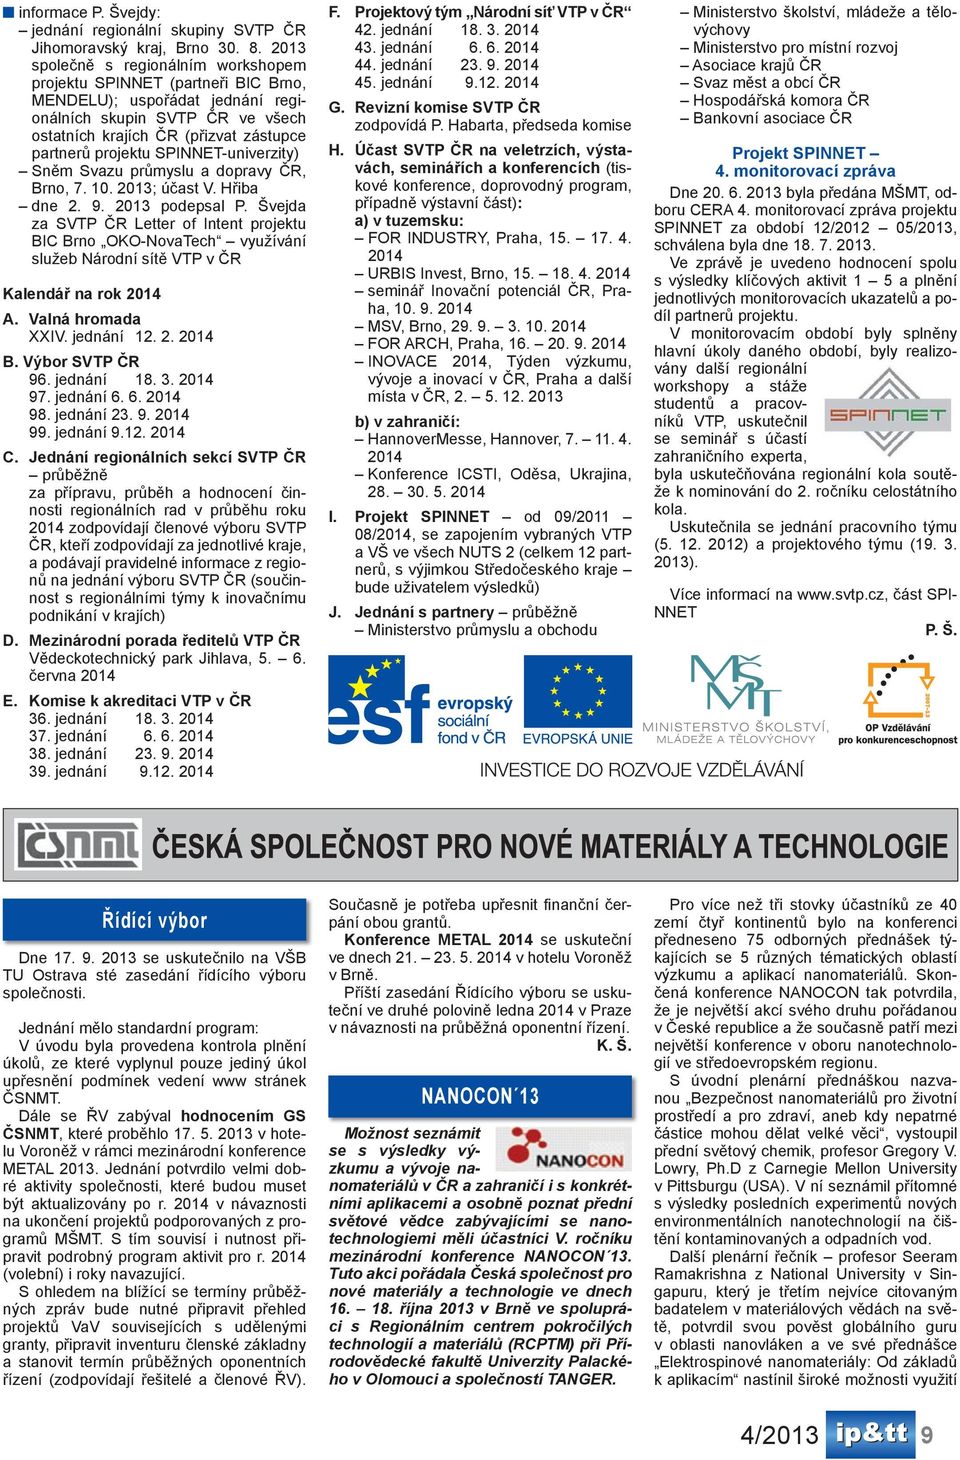 SPINNET-univerzity) Sněm Svazu průmyslu a dopravy ČR, Brno, 7. 10. 2013; účast V. Hřiba dne 2. 9. 2013 podepsal P.